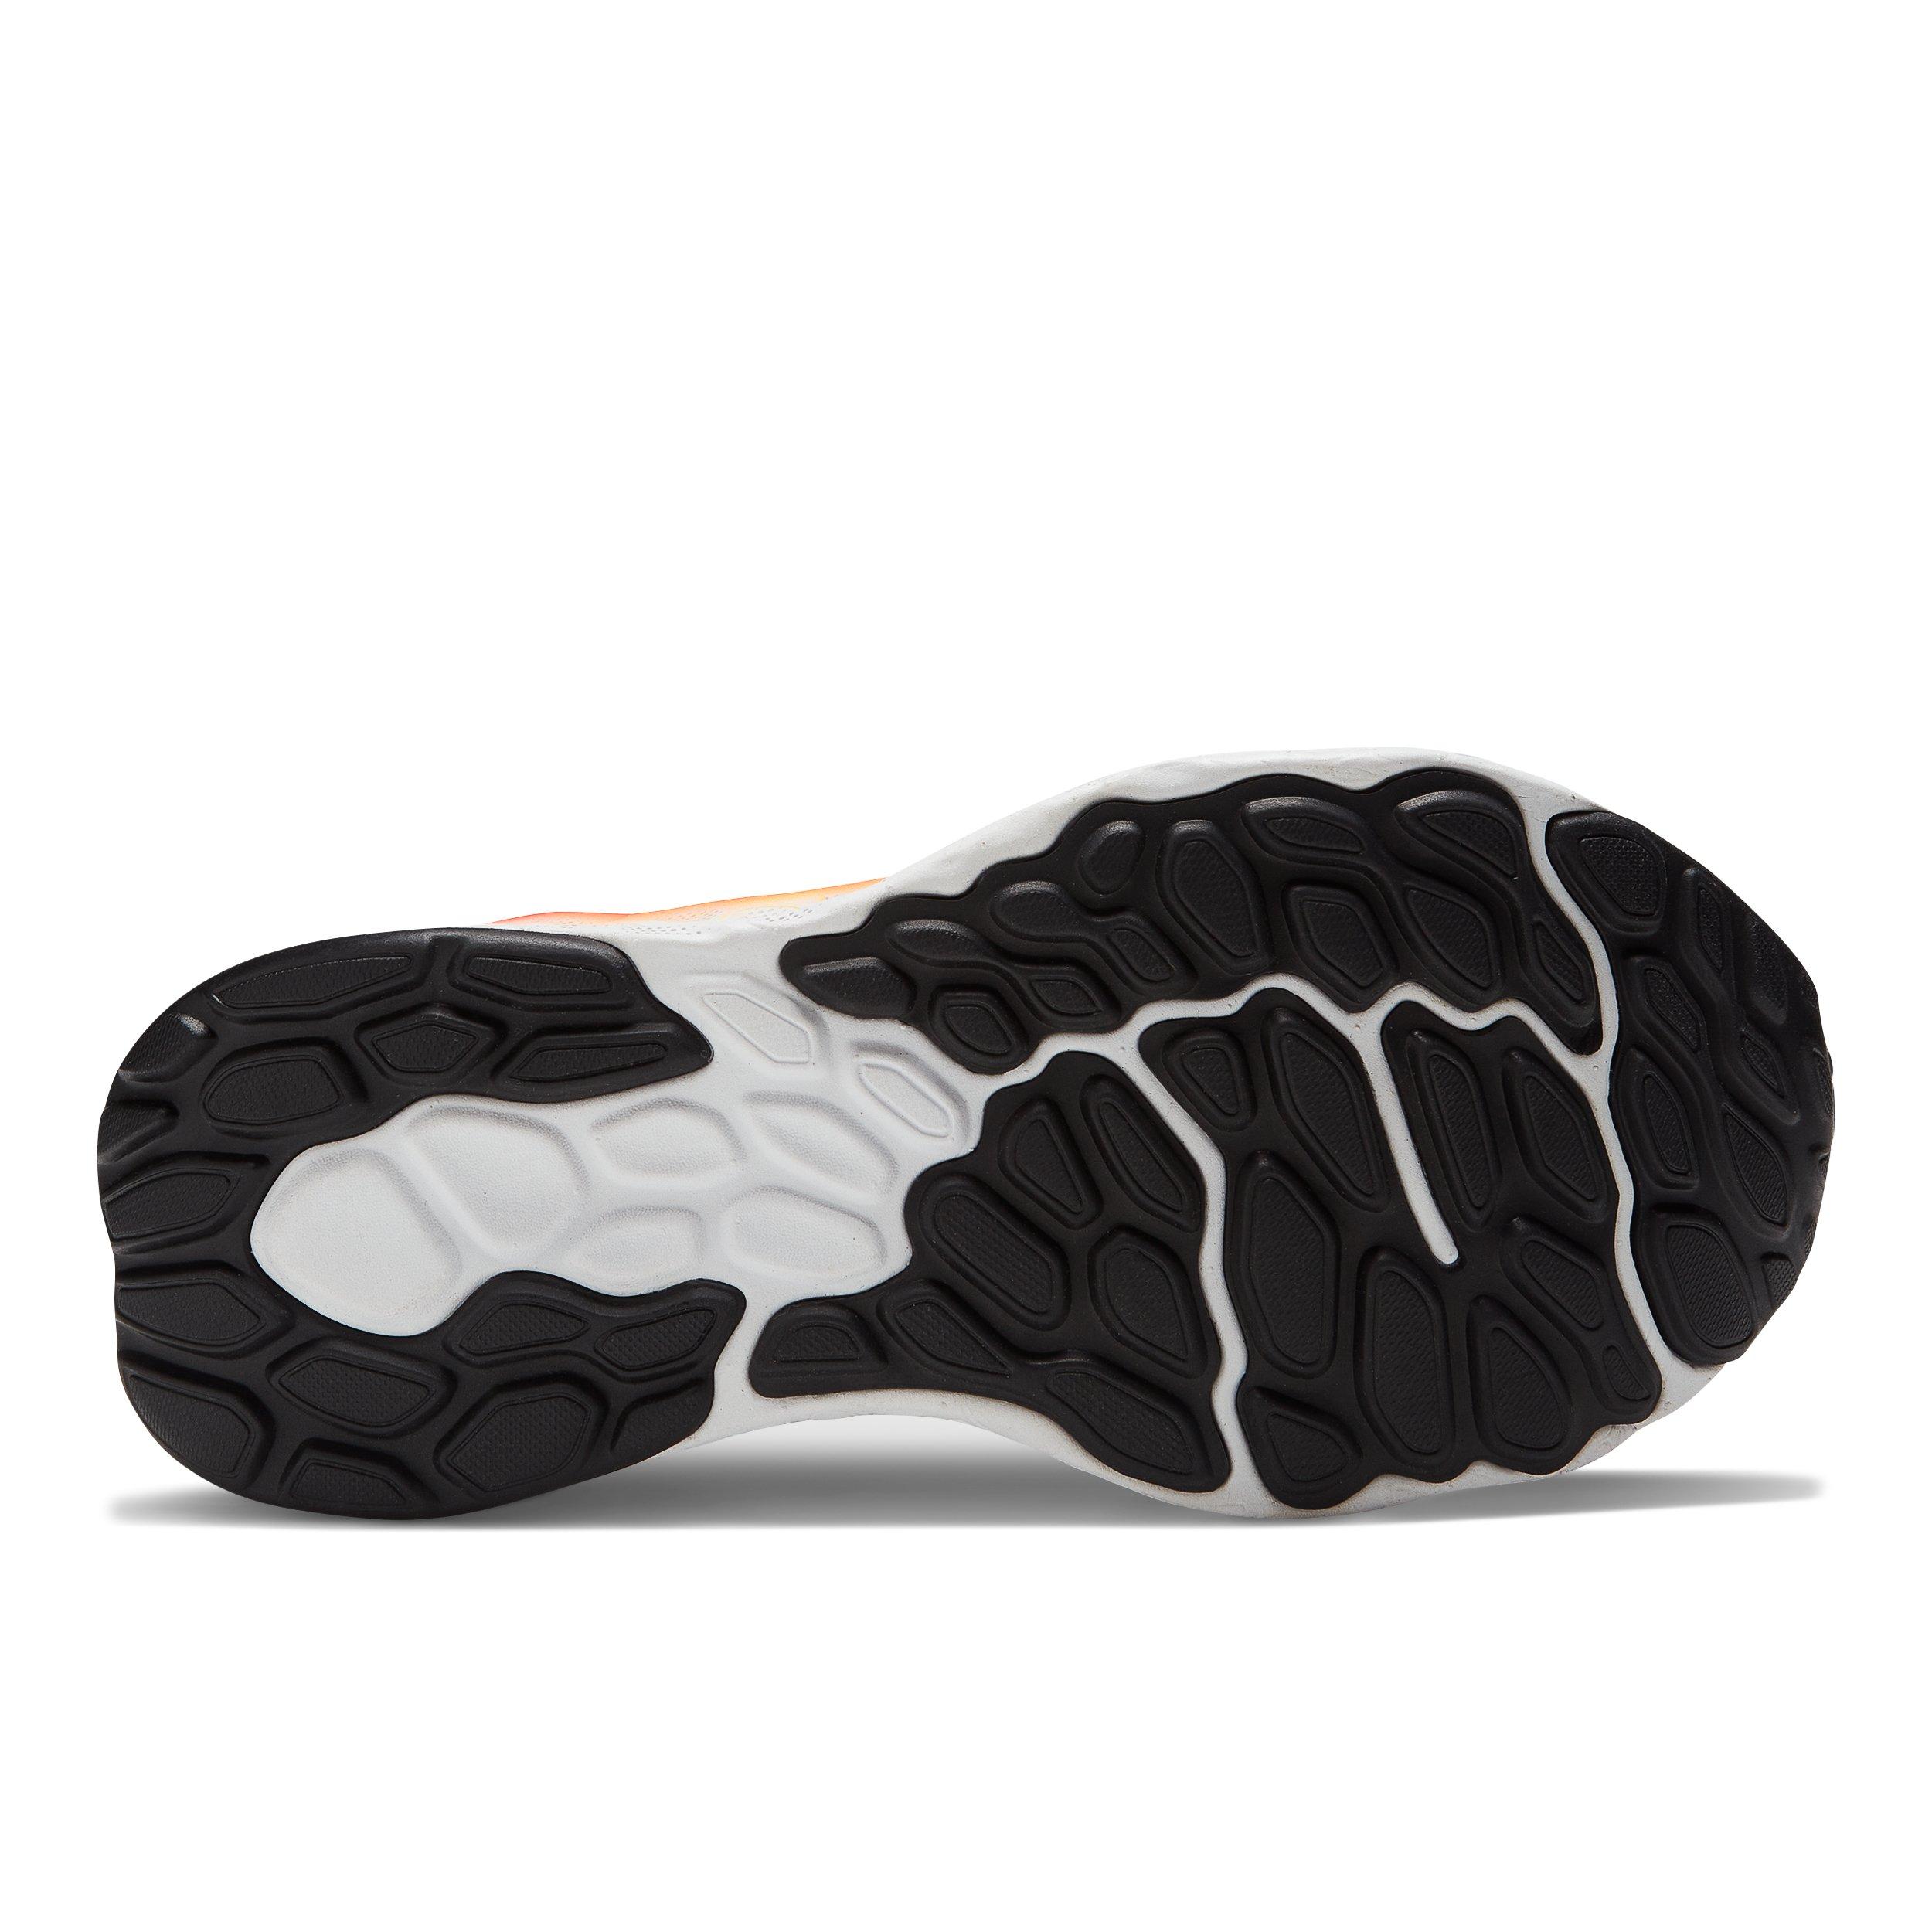 gunstig Vorige vereist New Balance Fresh Foam 1080 "Black/Multi" Women's Running Shoe